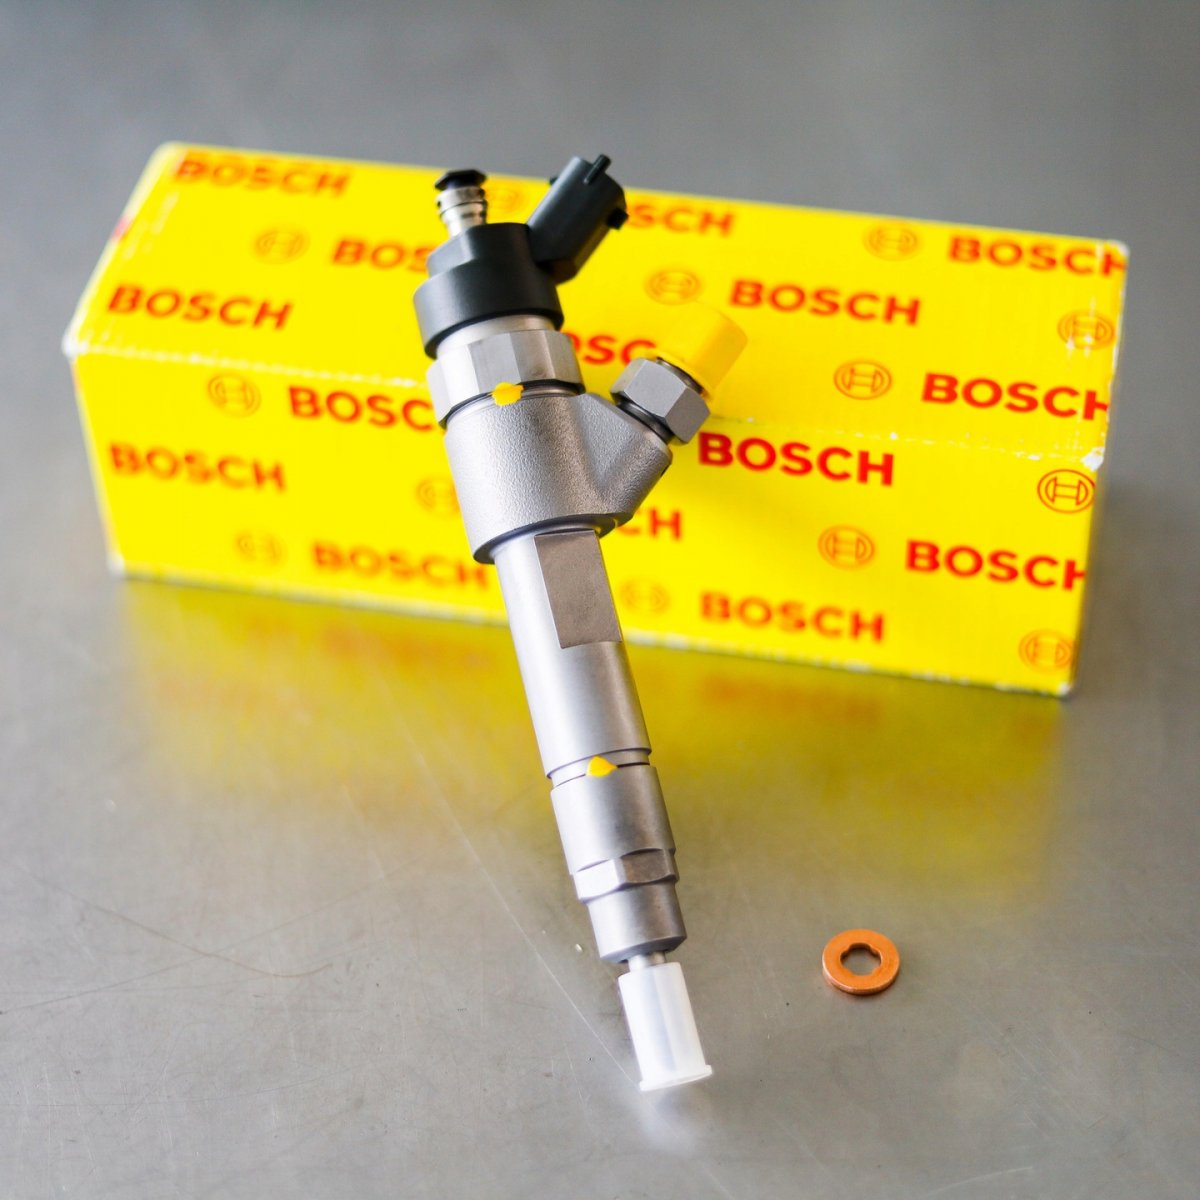 Wtryskiwacz Bosch po naprawie gotowy do nadania do zamawiającego na gwarancji na okres 2 lat w korzystnej cenie